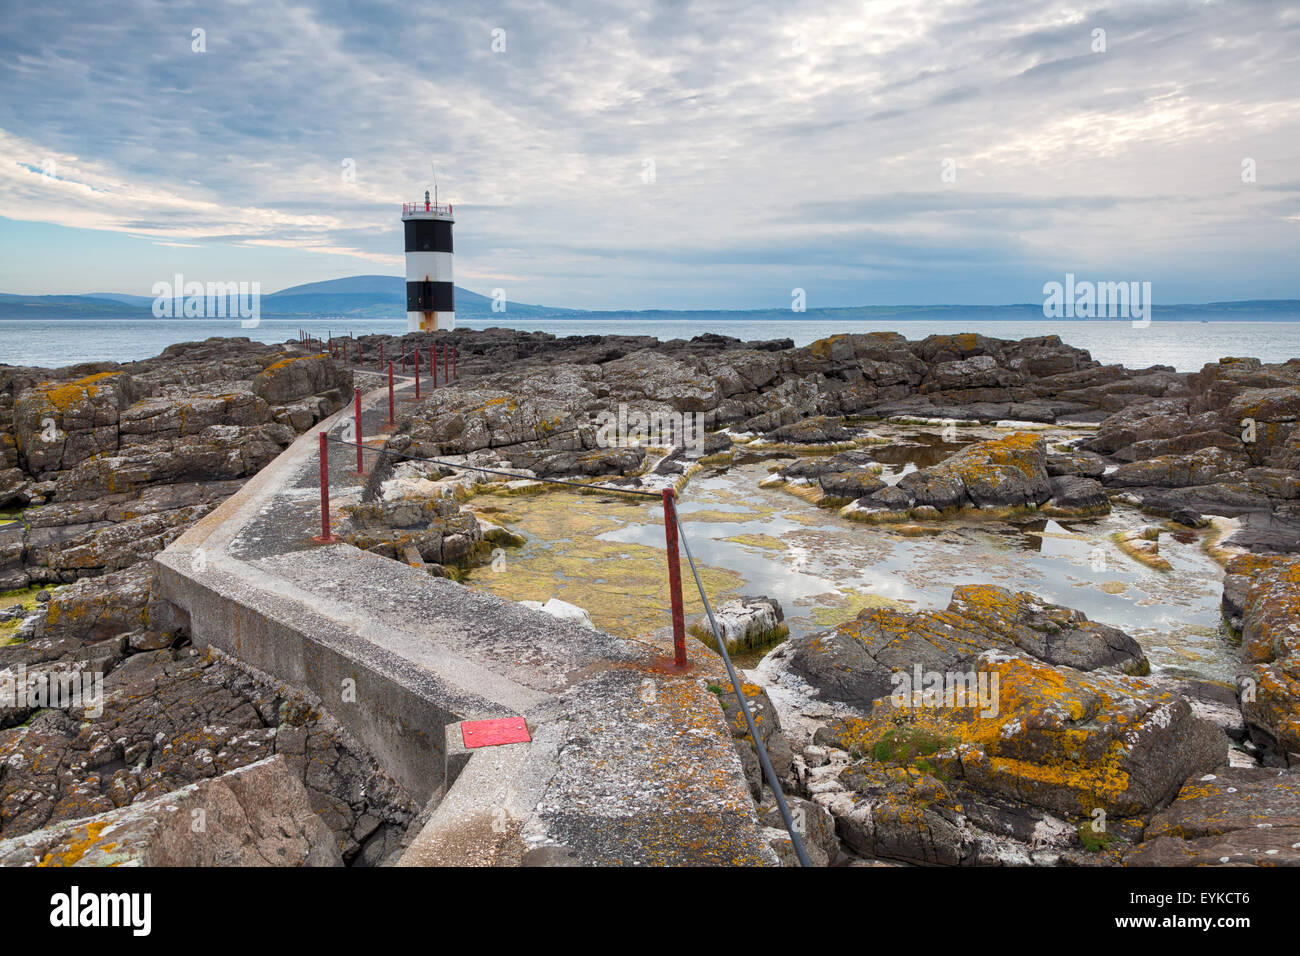 Rue Point Lighthouse on Rathlin Island, Northern Ireland Stock Photo